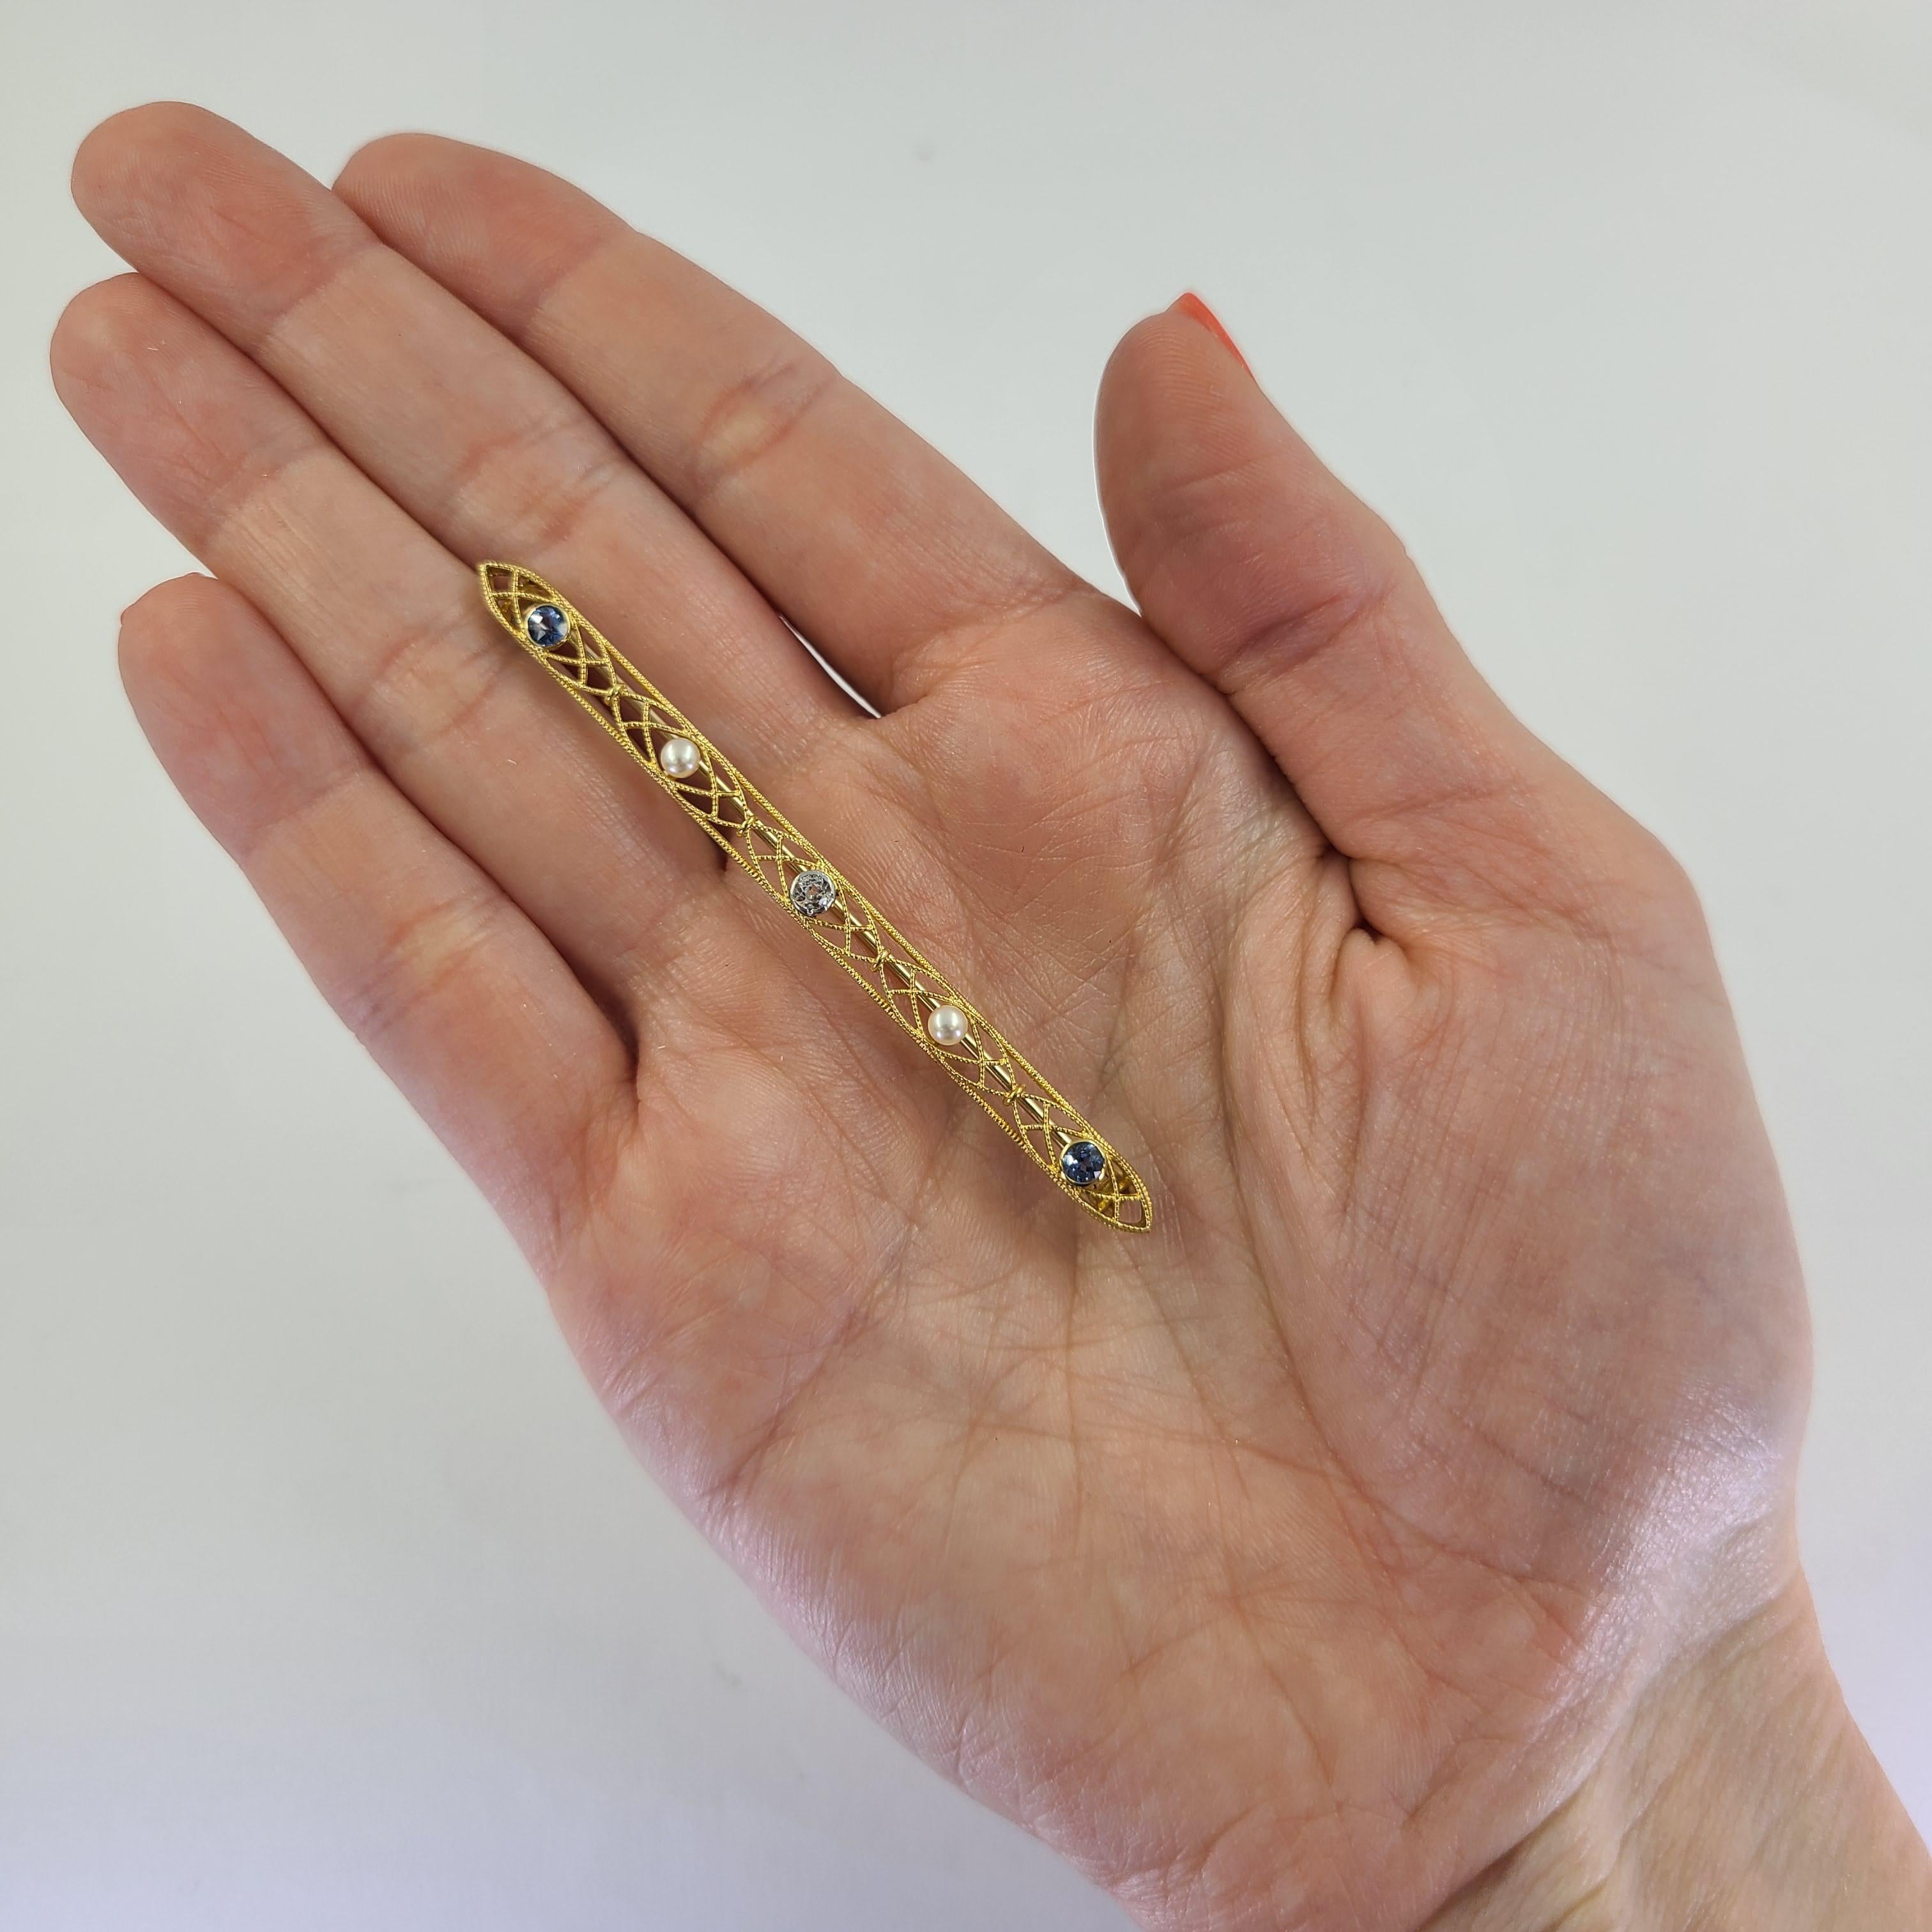 14 Karat Gelbgold durchbrochene Bar Pin mit 2 runden Saphiren, 2 Zuchtperlen, & 1 Old European Cut Diamond. 2,75 Zentimeter lang. Das fertige Gewicht beträgt 3,8 Gramm.